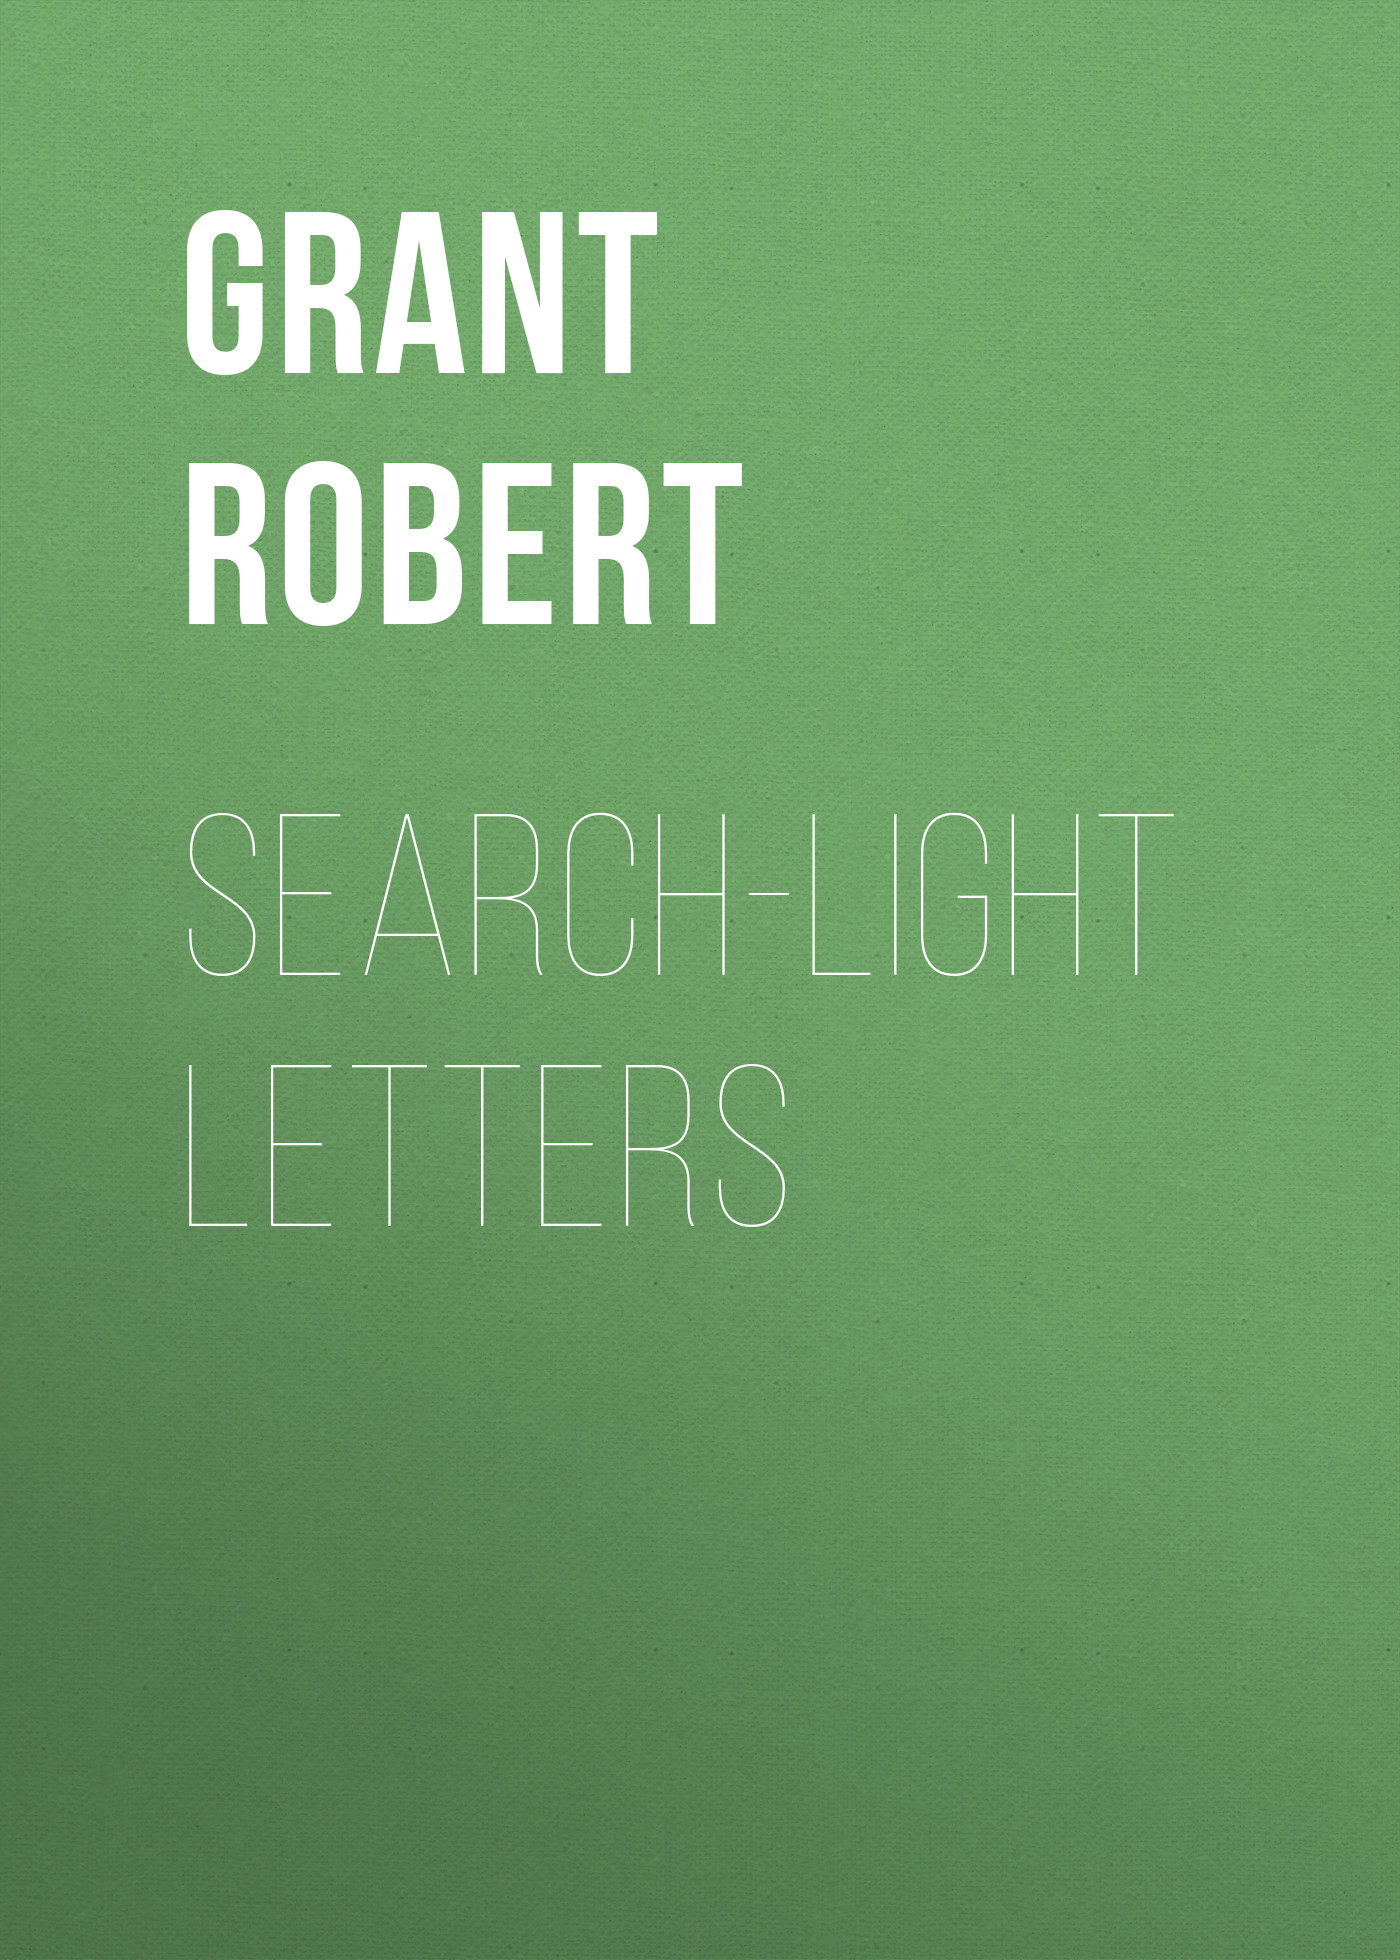 Книга Search-Light Letters из серии , созданная Robert Grant, может относится к жанру Литература 19 века, Зарубежная старинная литература, Зарубежная классика, Юмористическая проза. Стоимость электронной книги Search-Light Letters с идентификатором 25449588 составляет 0 руб.